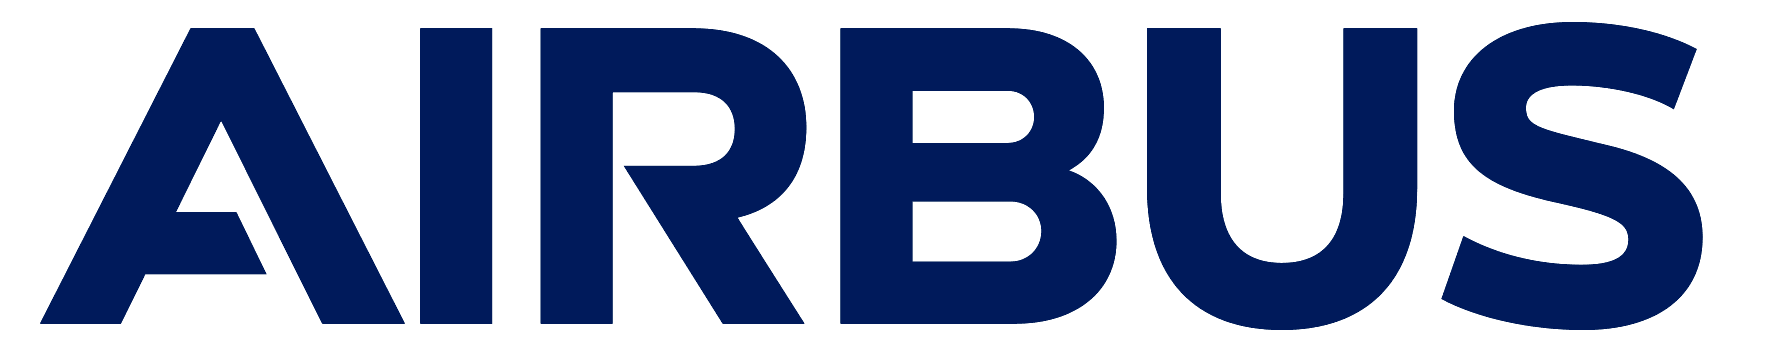 Arbus logo